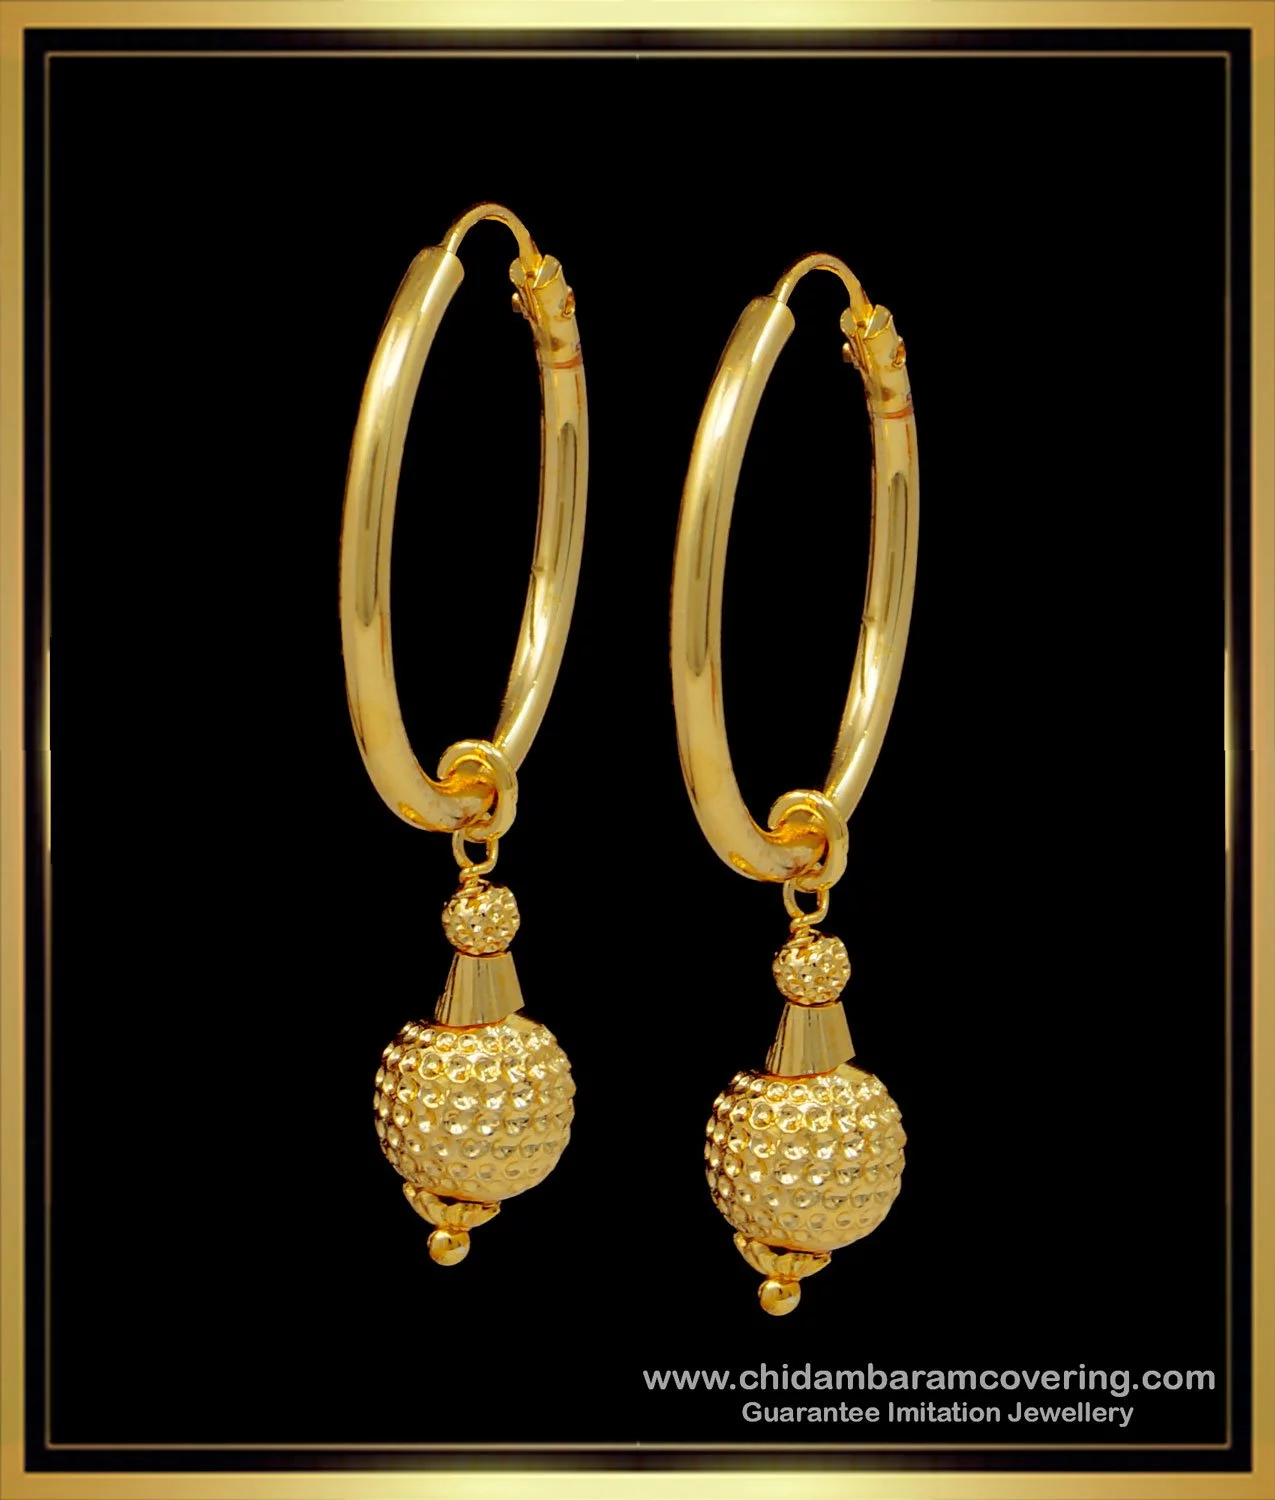 14k Gold Garland Design Chand Bali Earrings - Gleam Jewels-sgquangbinhtourist.com.vn